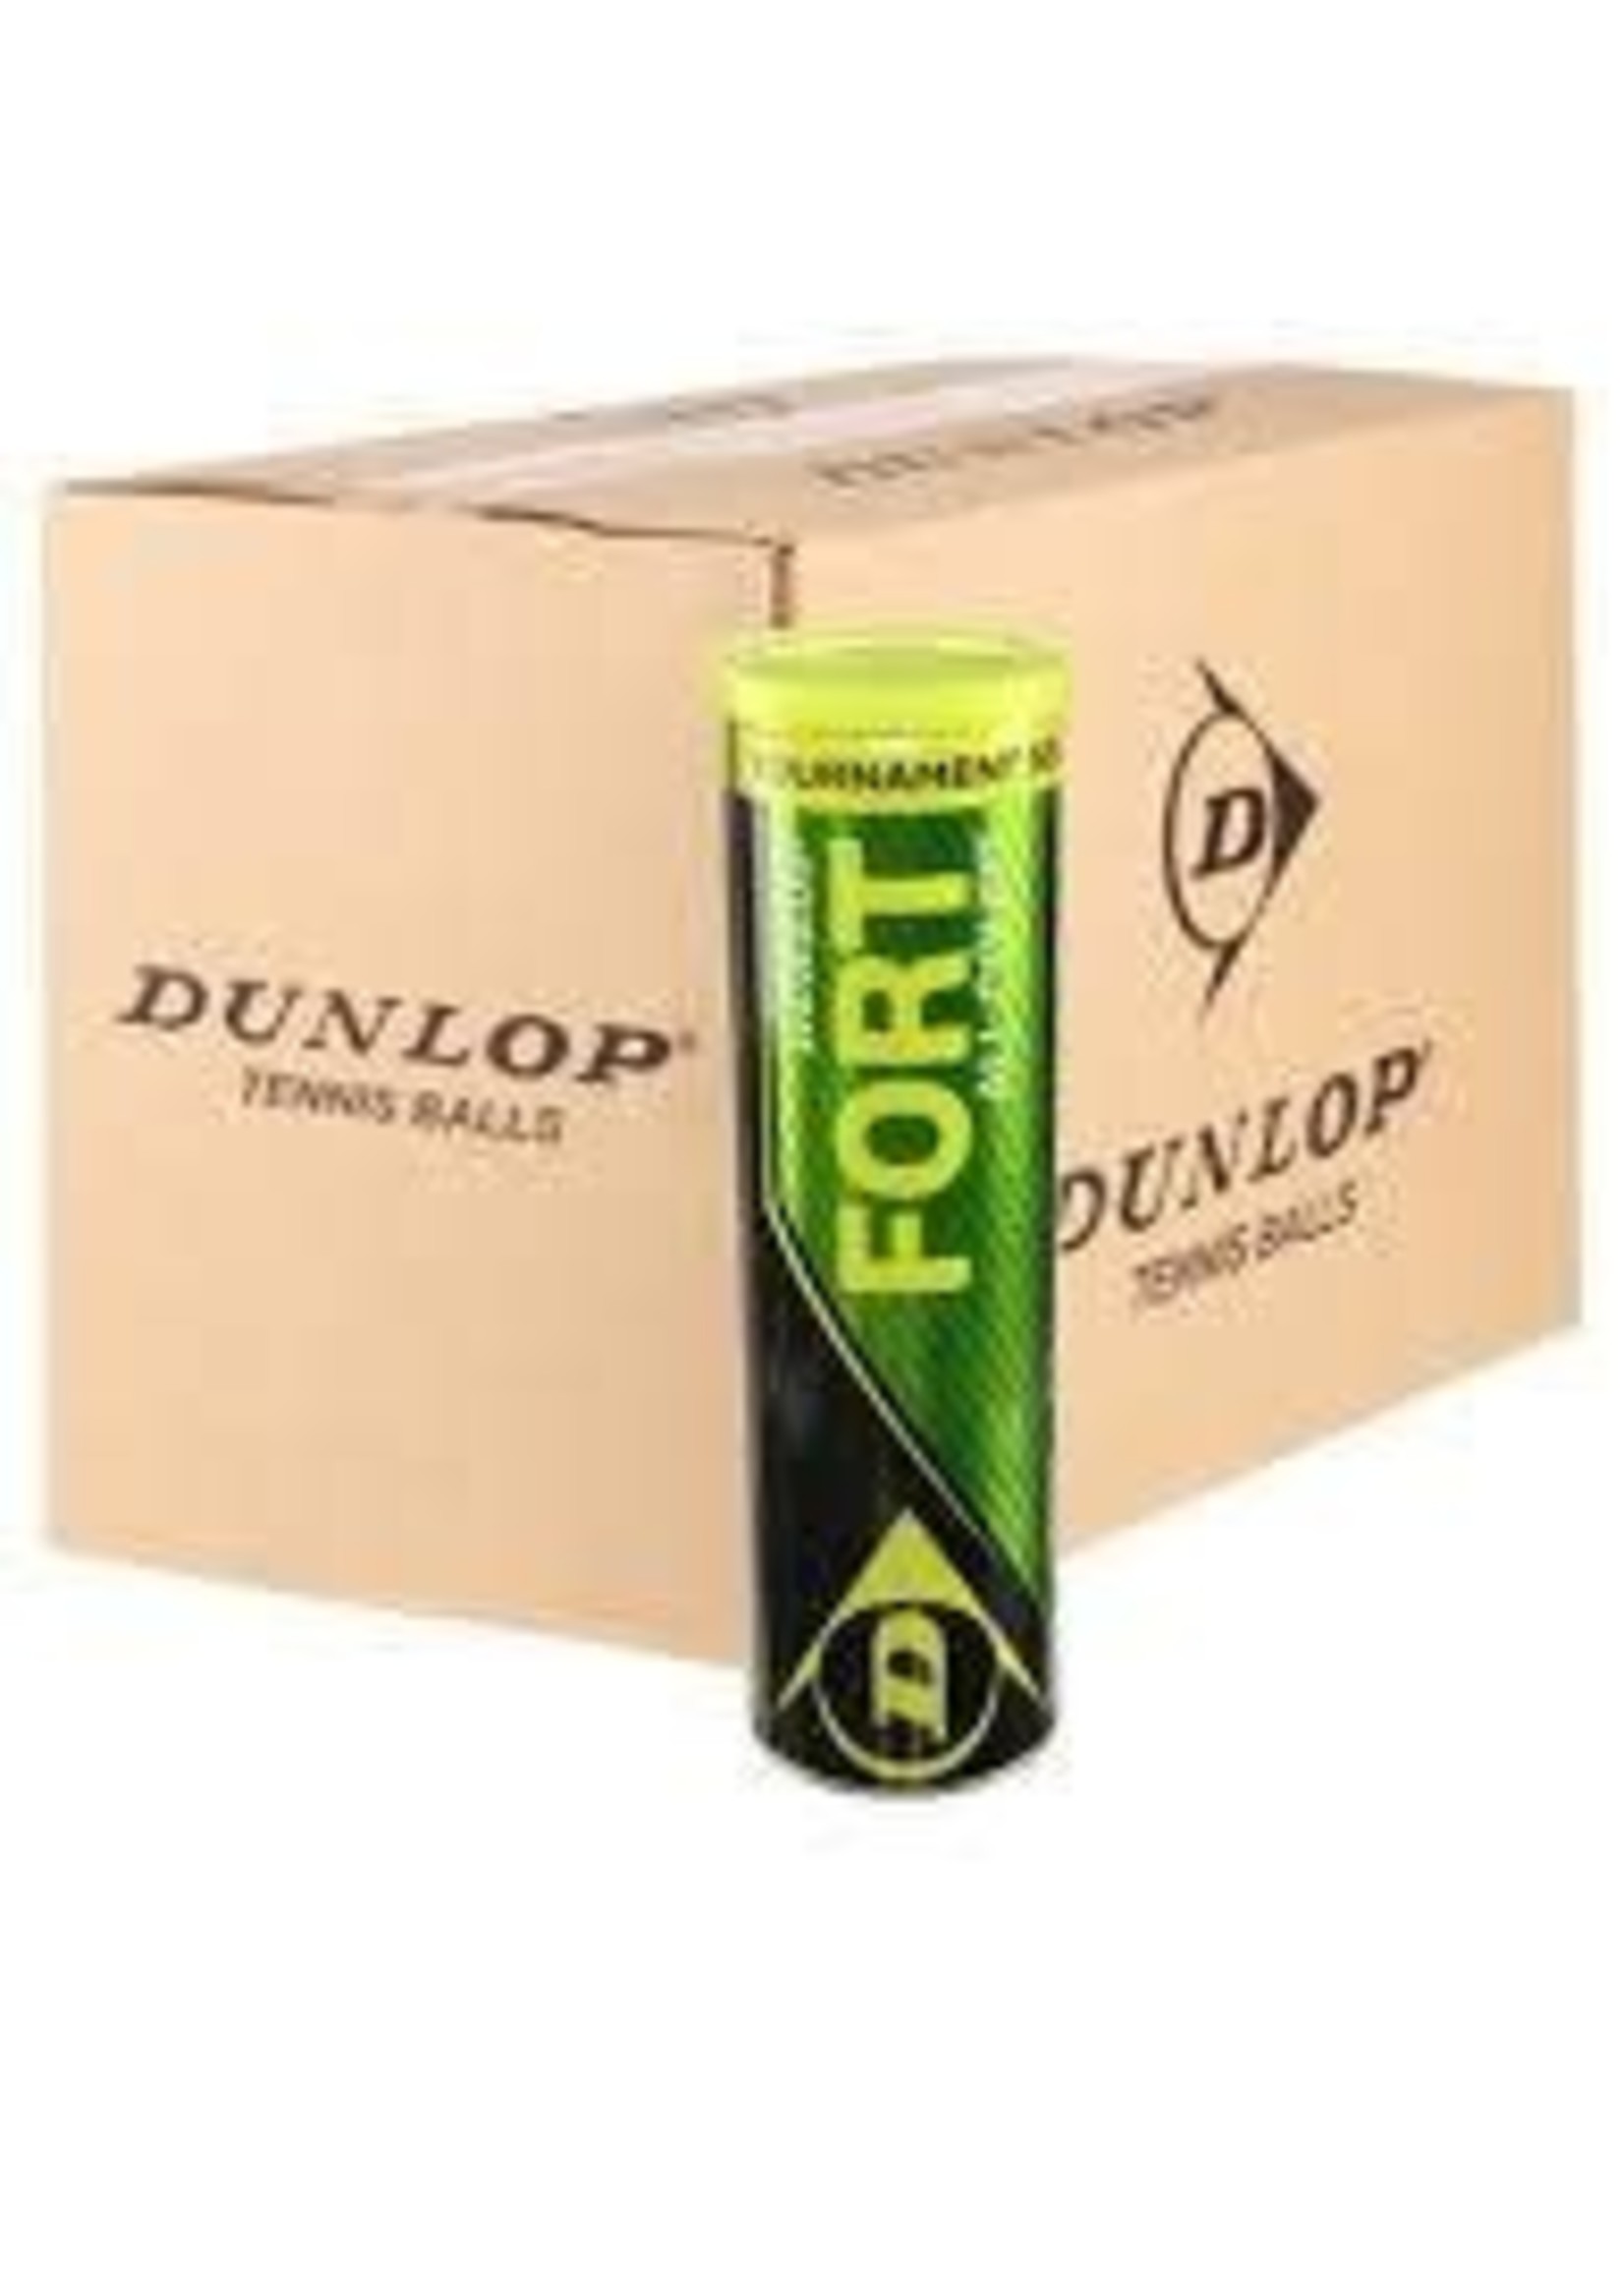 Dunlop Fort Tournament Select Tennis Balls BULK ORDER Gannon Sports